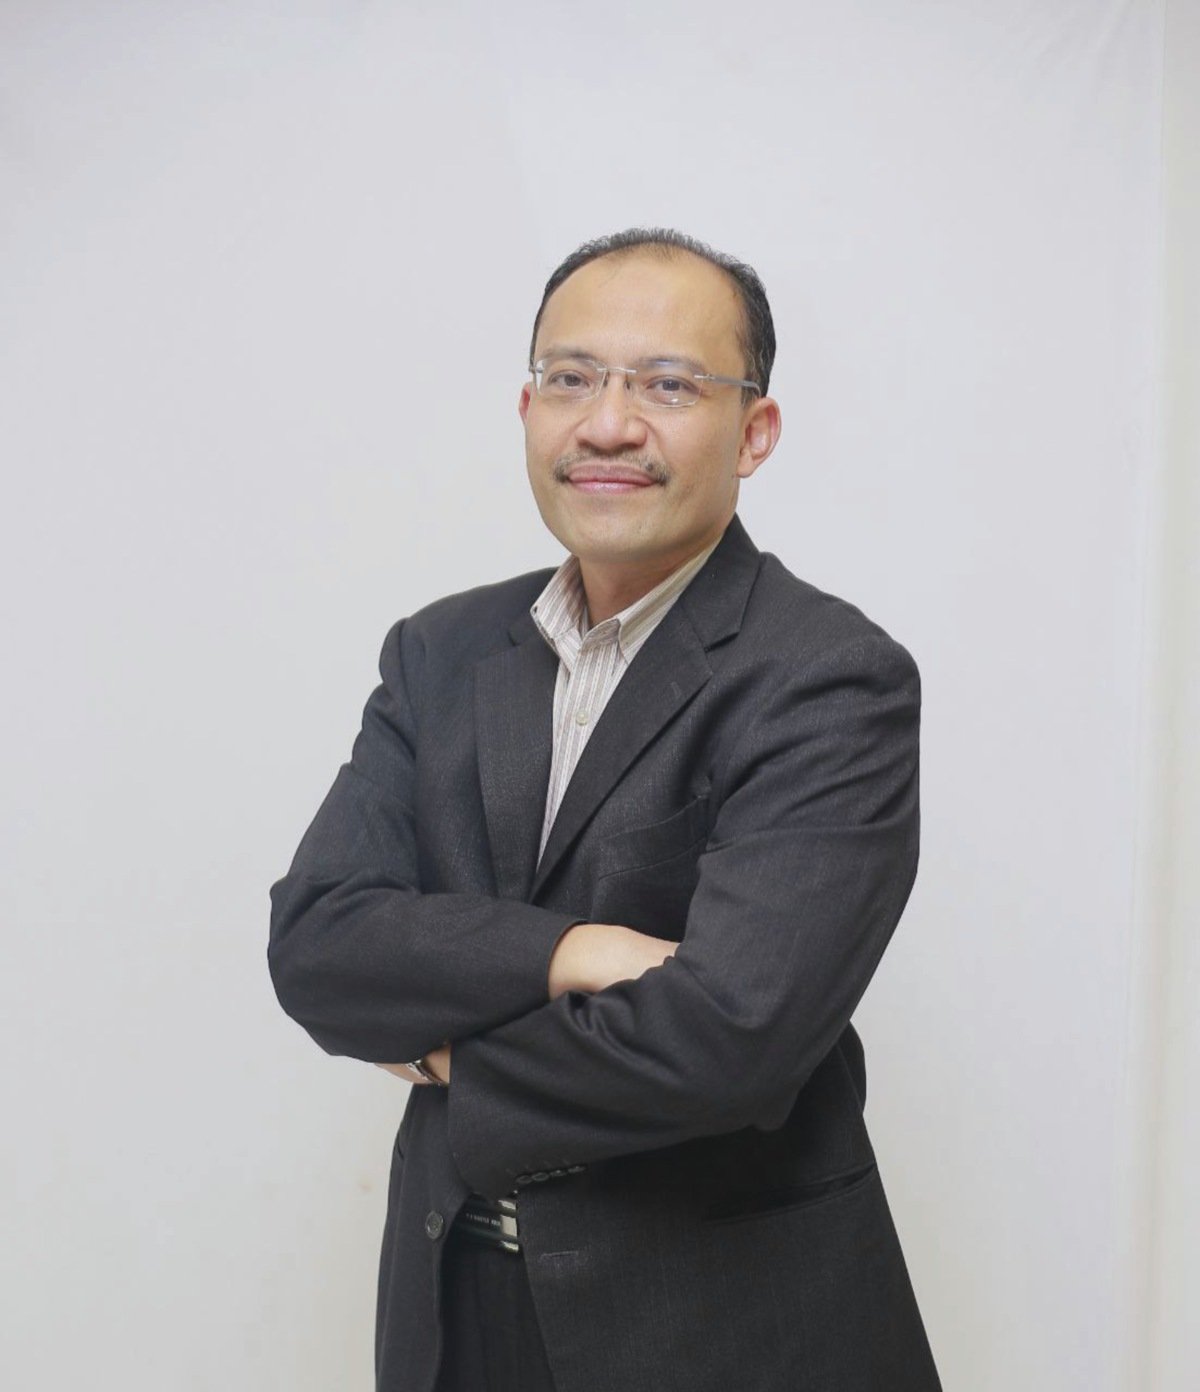 DR Tengku Saifudin